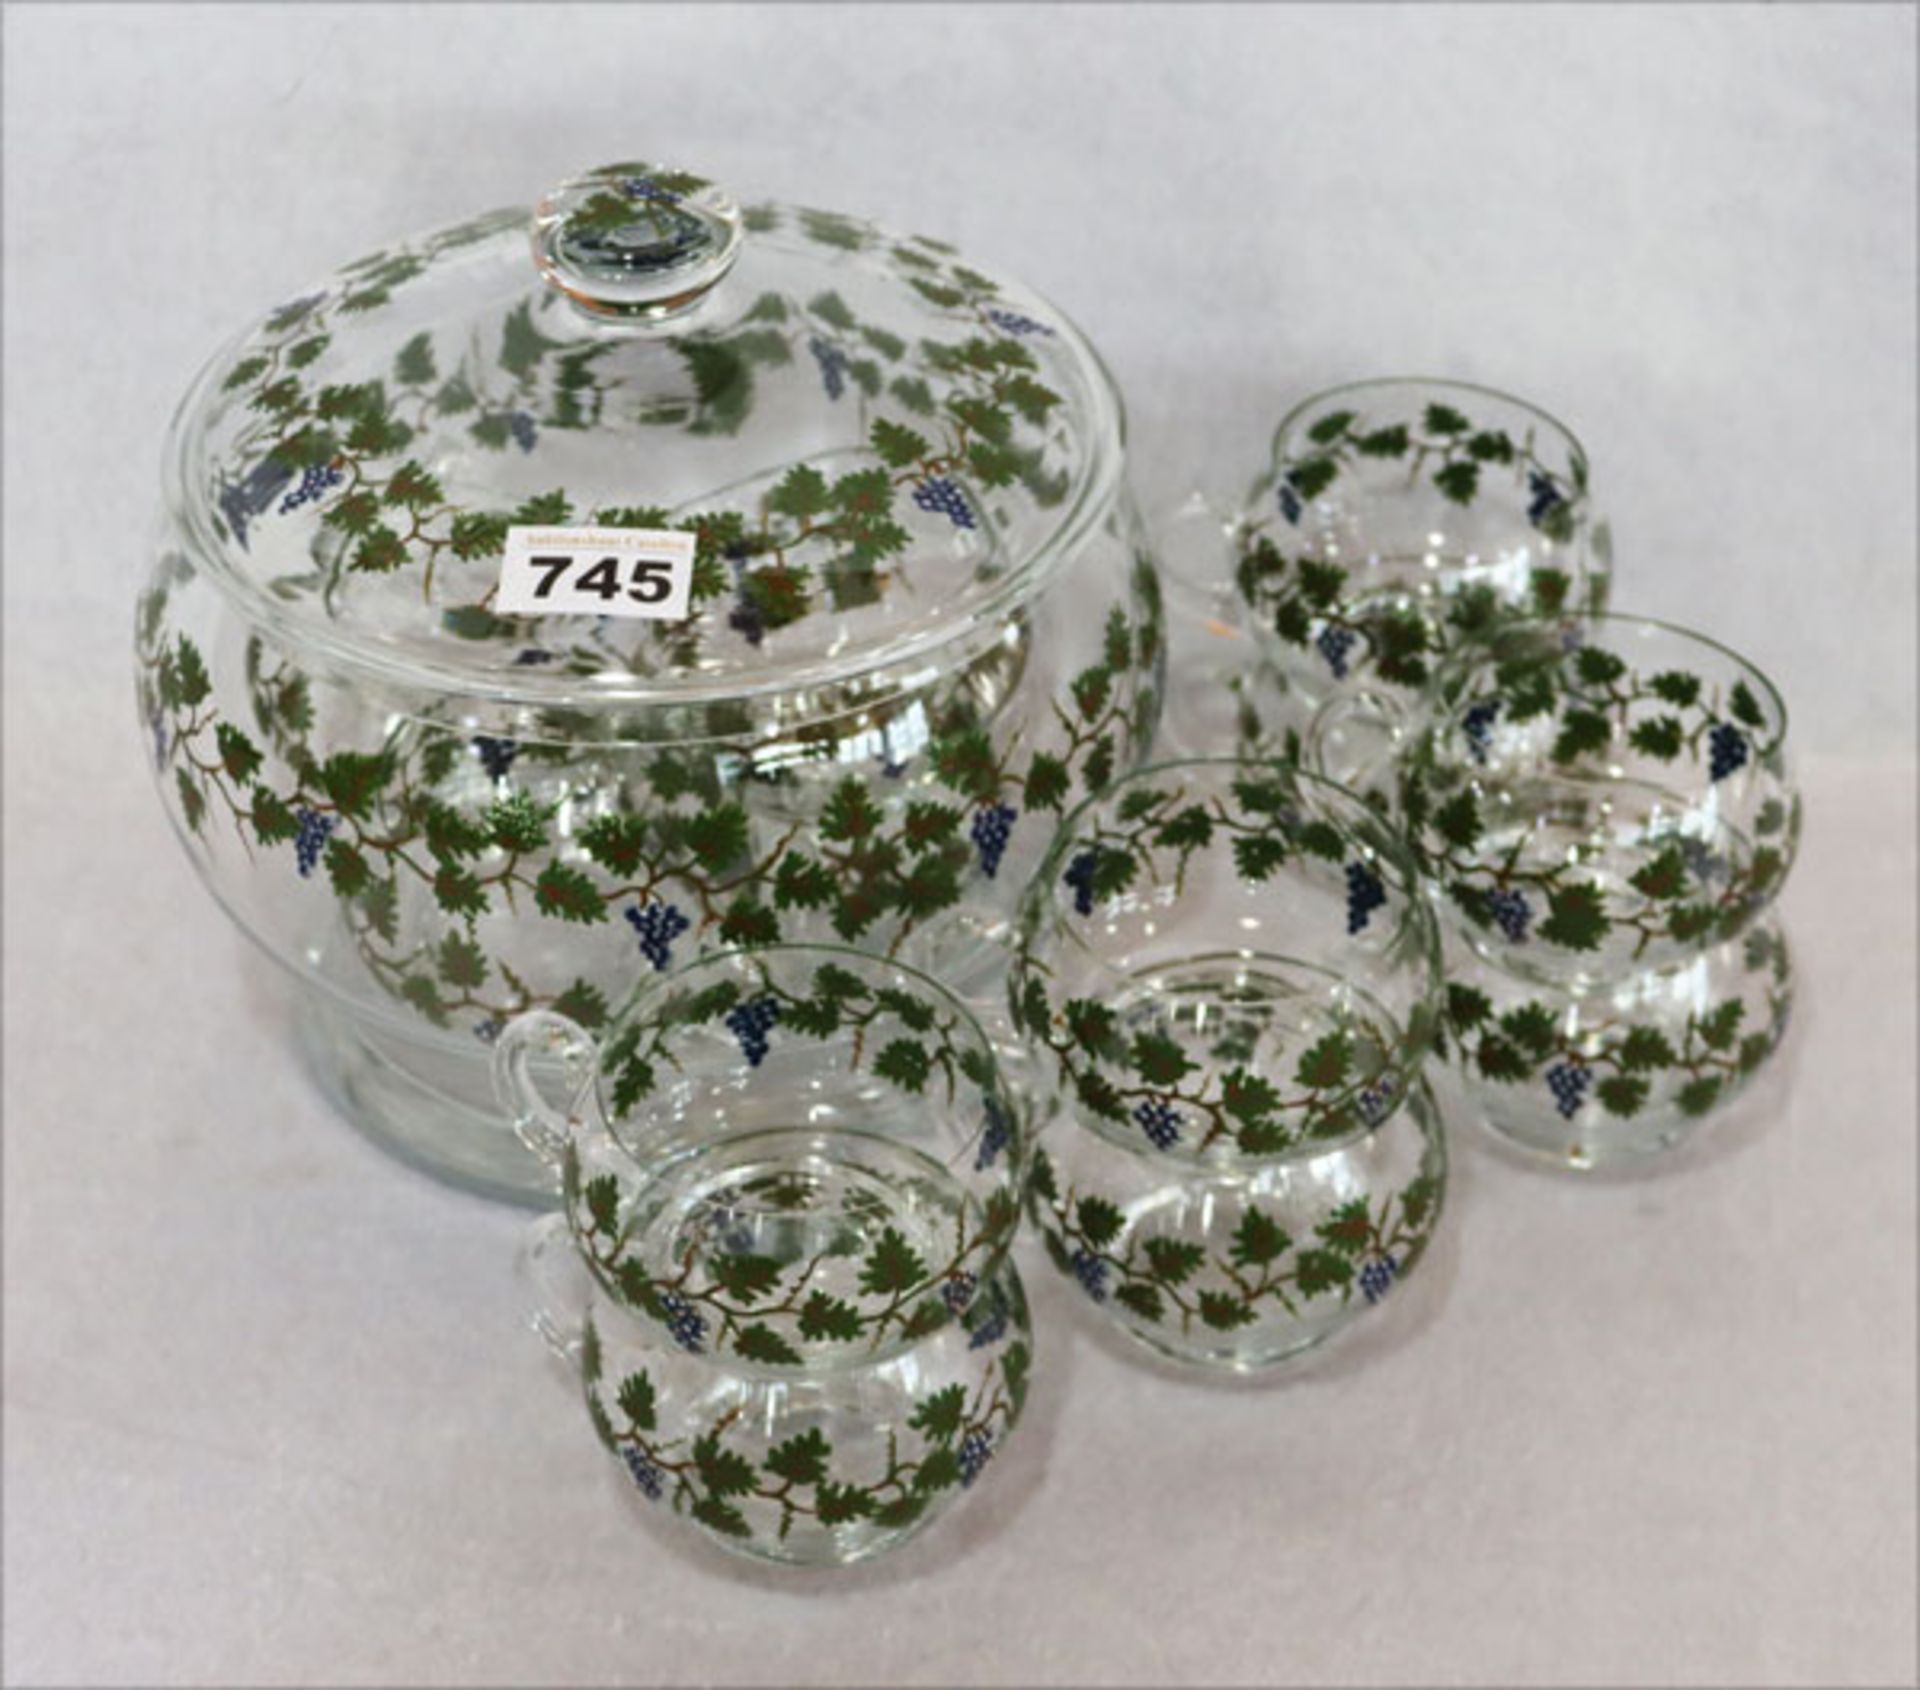 Dekorative Glas Bowle mit bemaltem Traubendekor und 12 passenden Bechern, H 21 cm, D 20 cm, guter